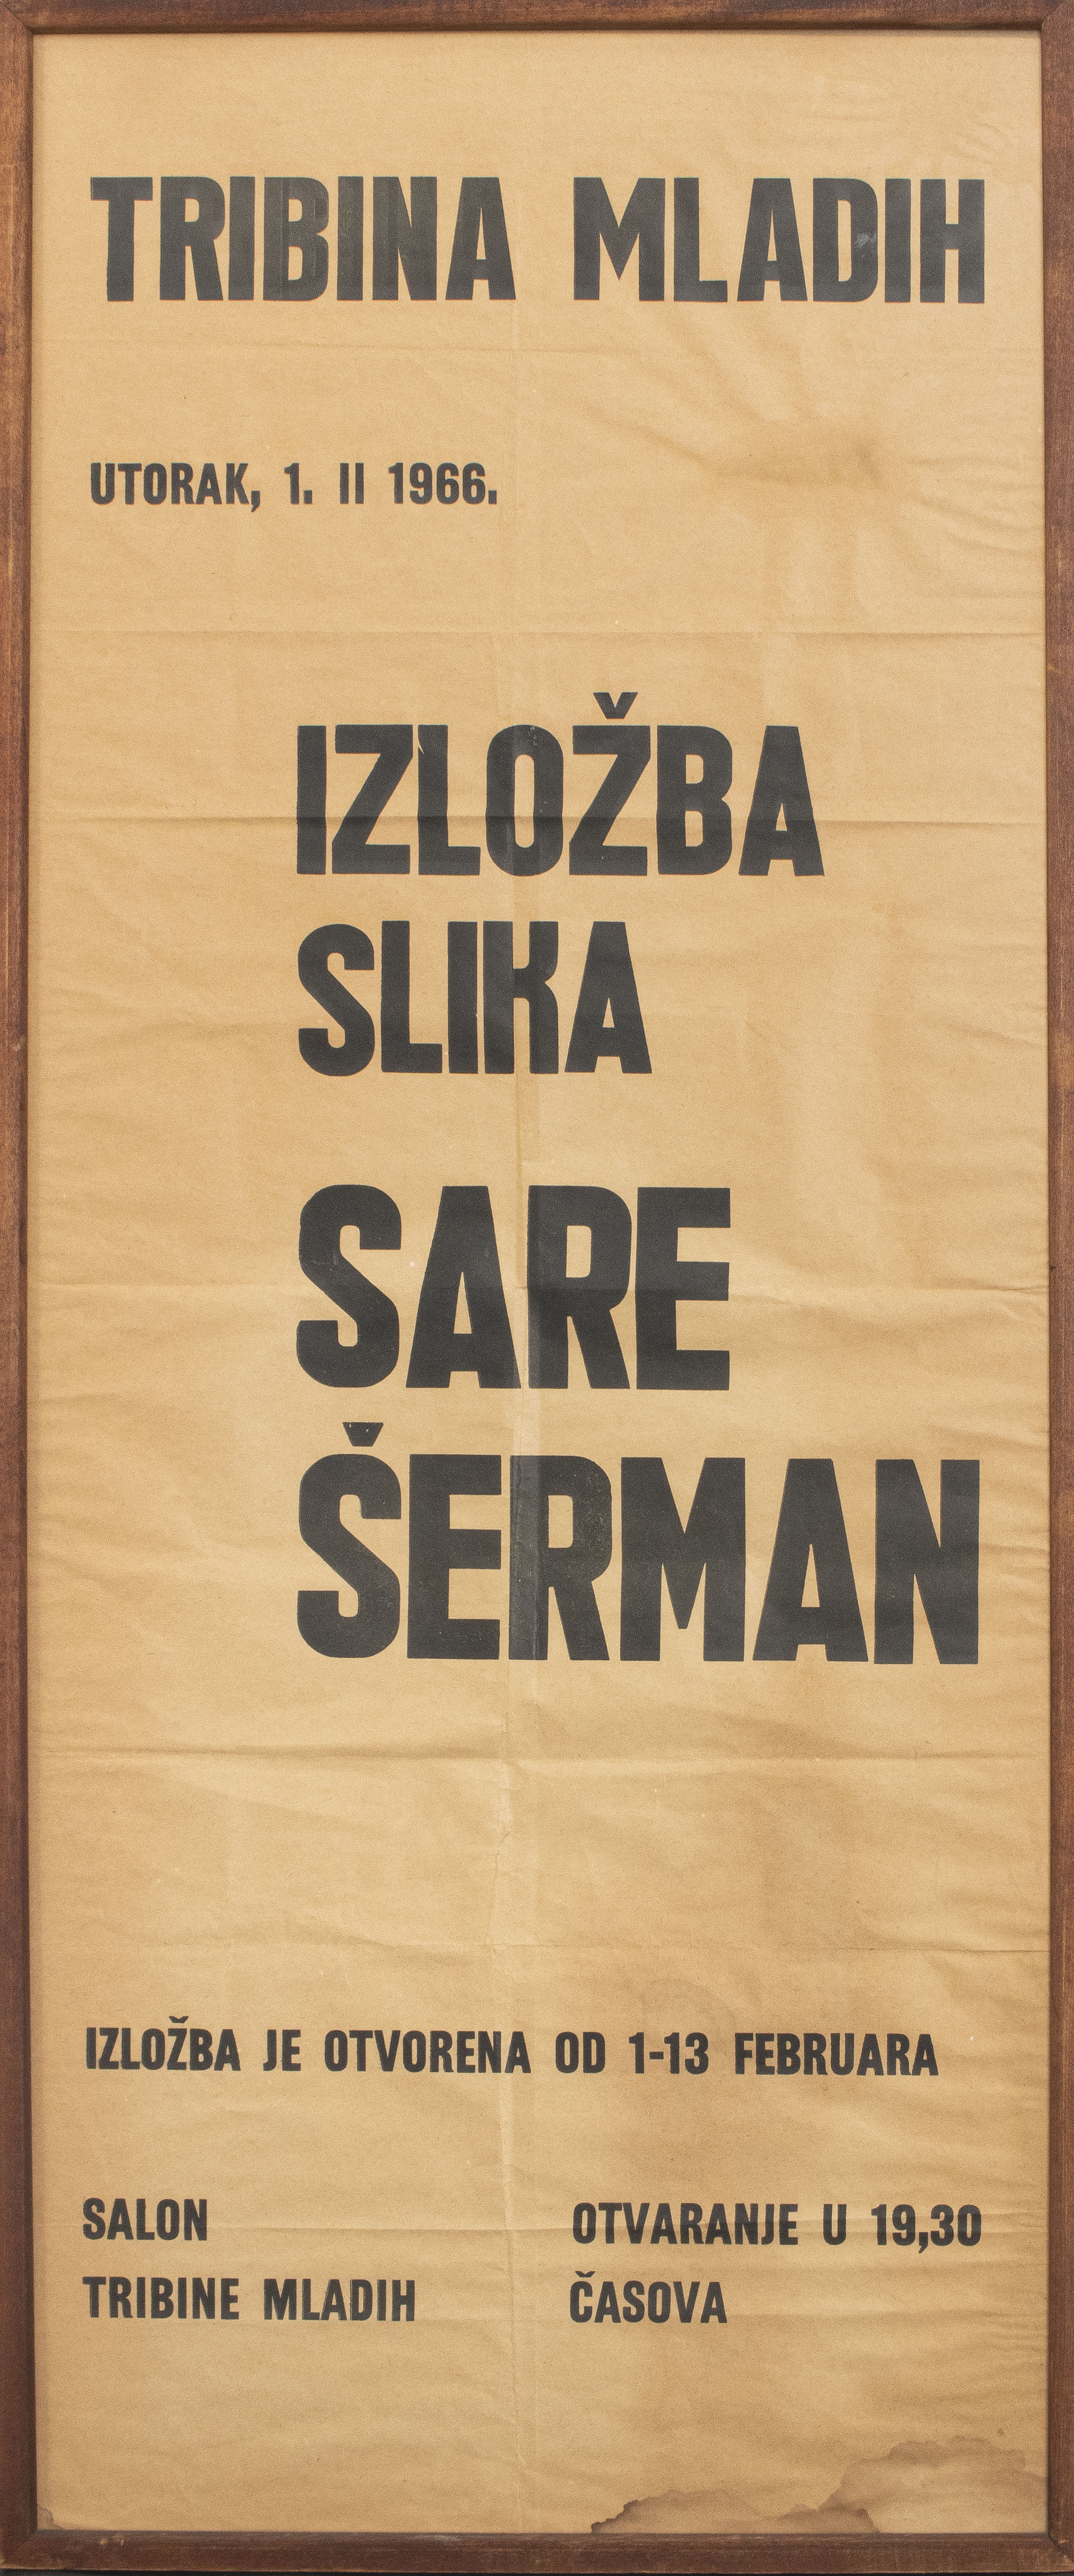 SARAI SHERMAN 1966 CROATIAN EXHIBITION